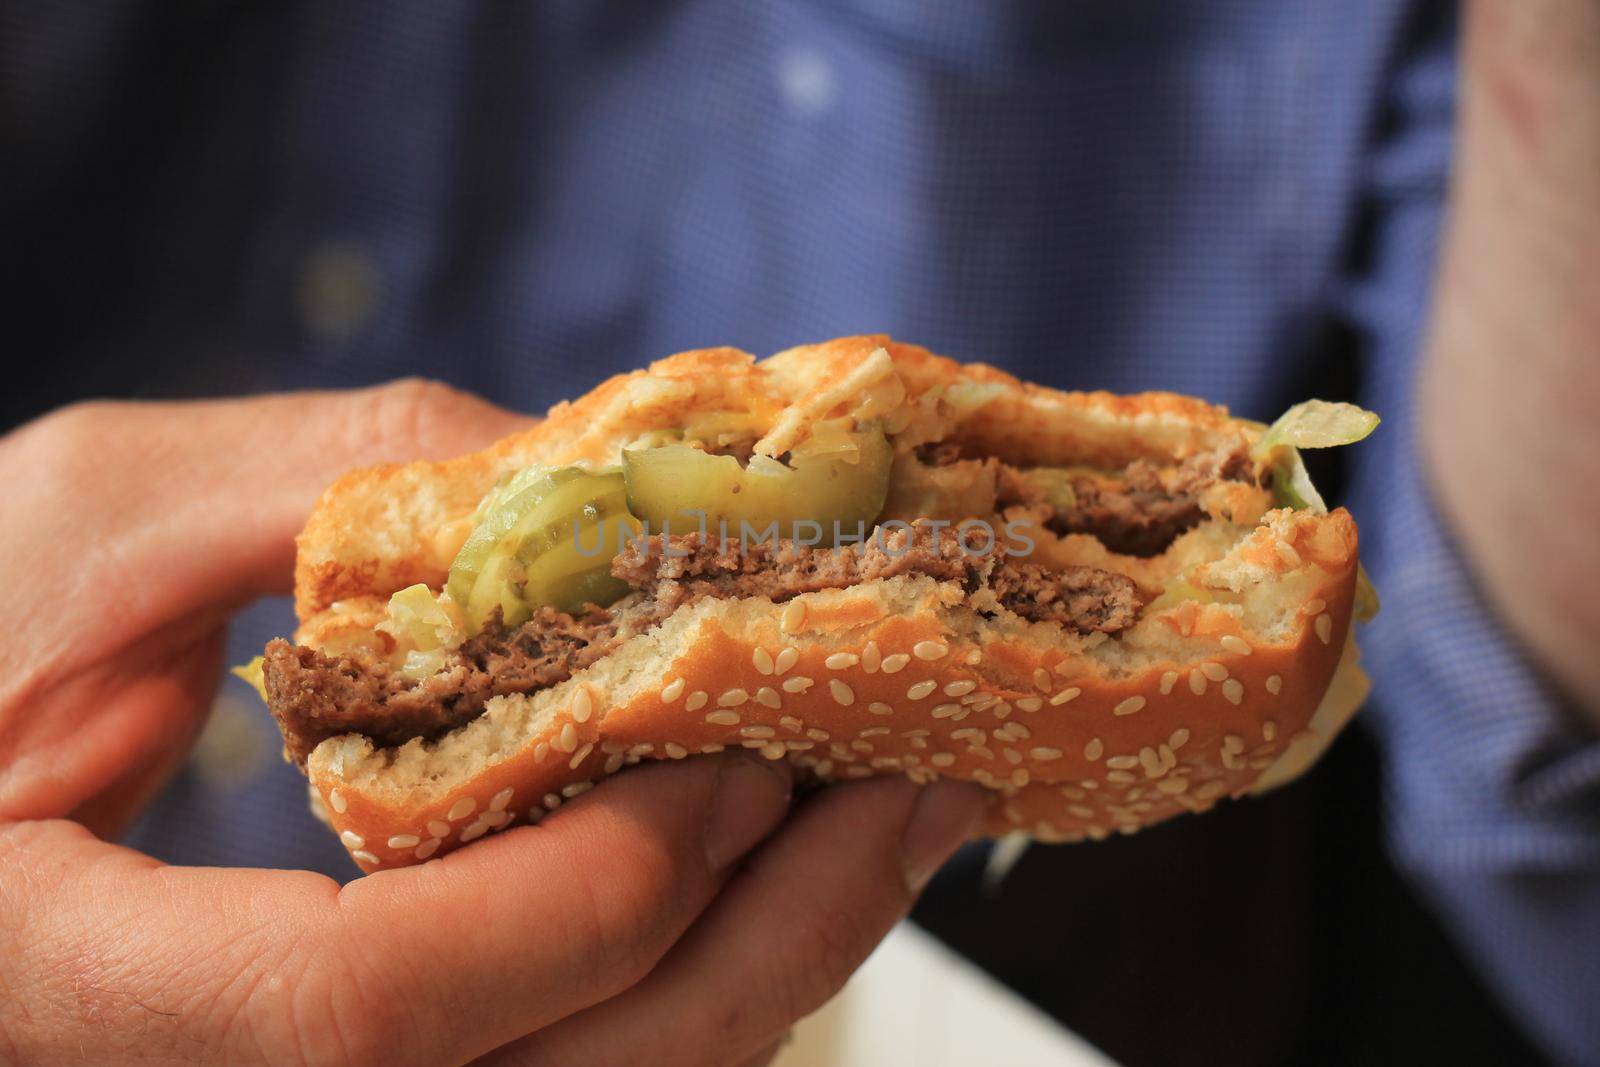 Man holding a fresh made hamburger